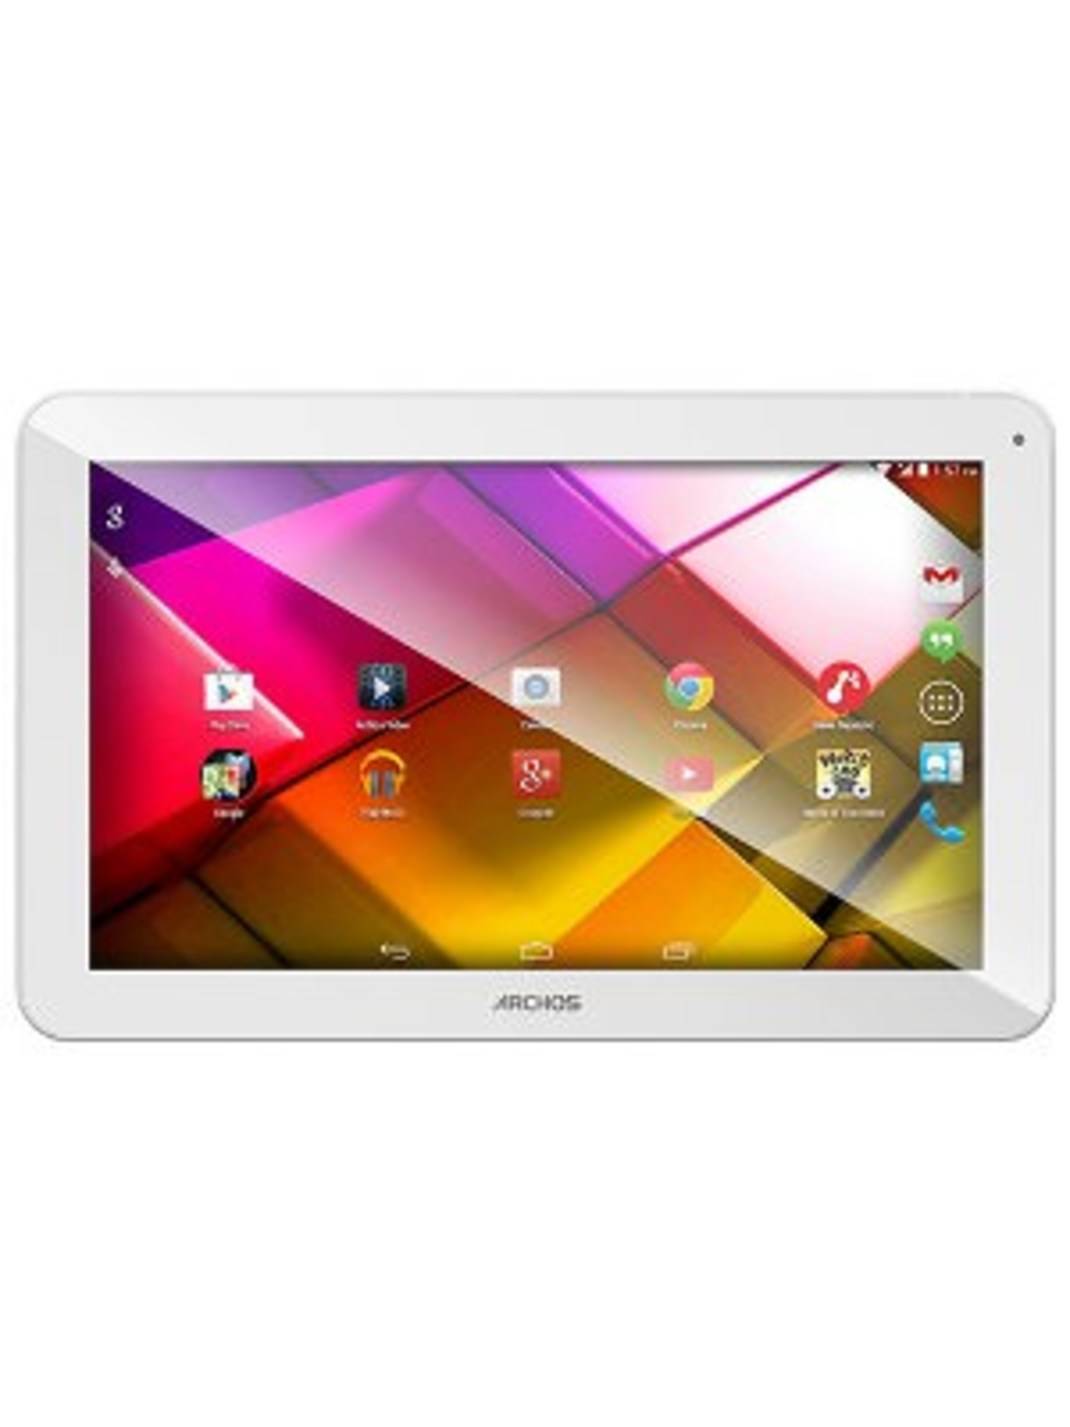 Archos Archos 101 Platinum 3G Tablet Android 7.0 Nougat*s.gt. 